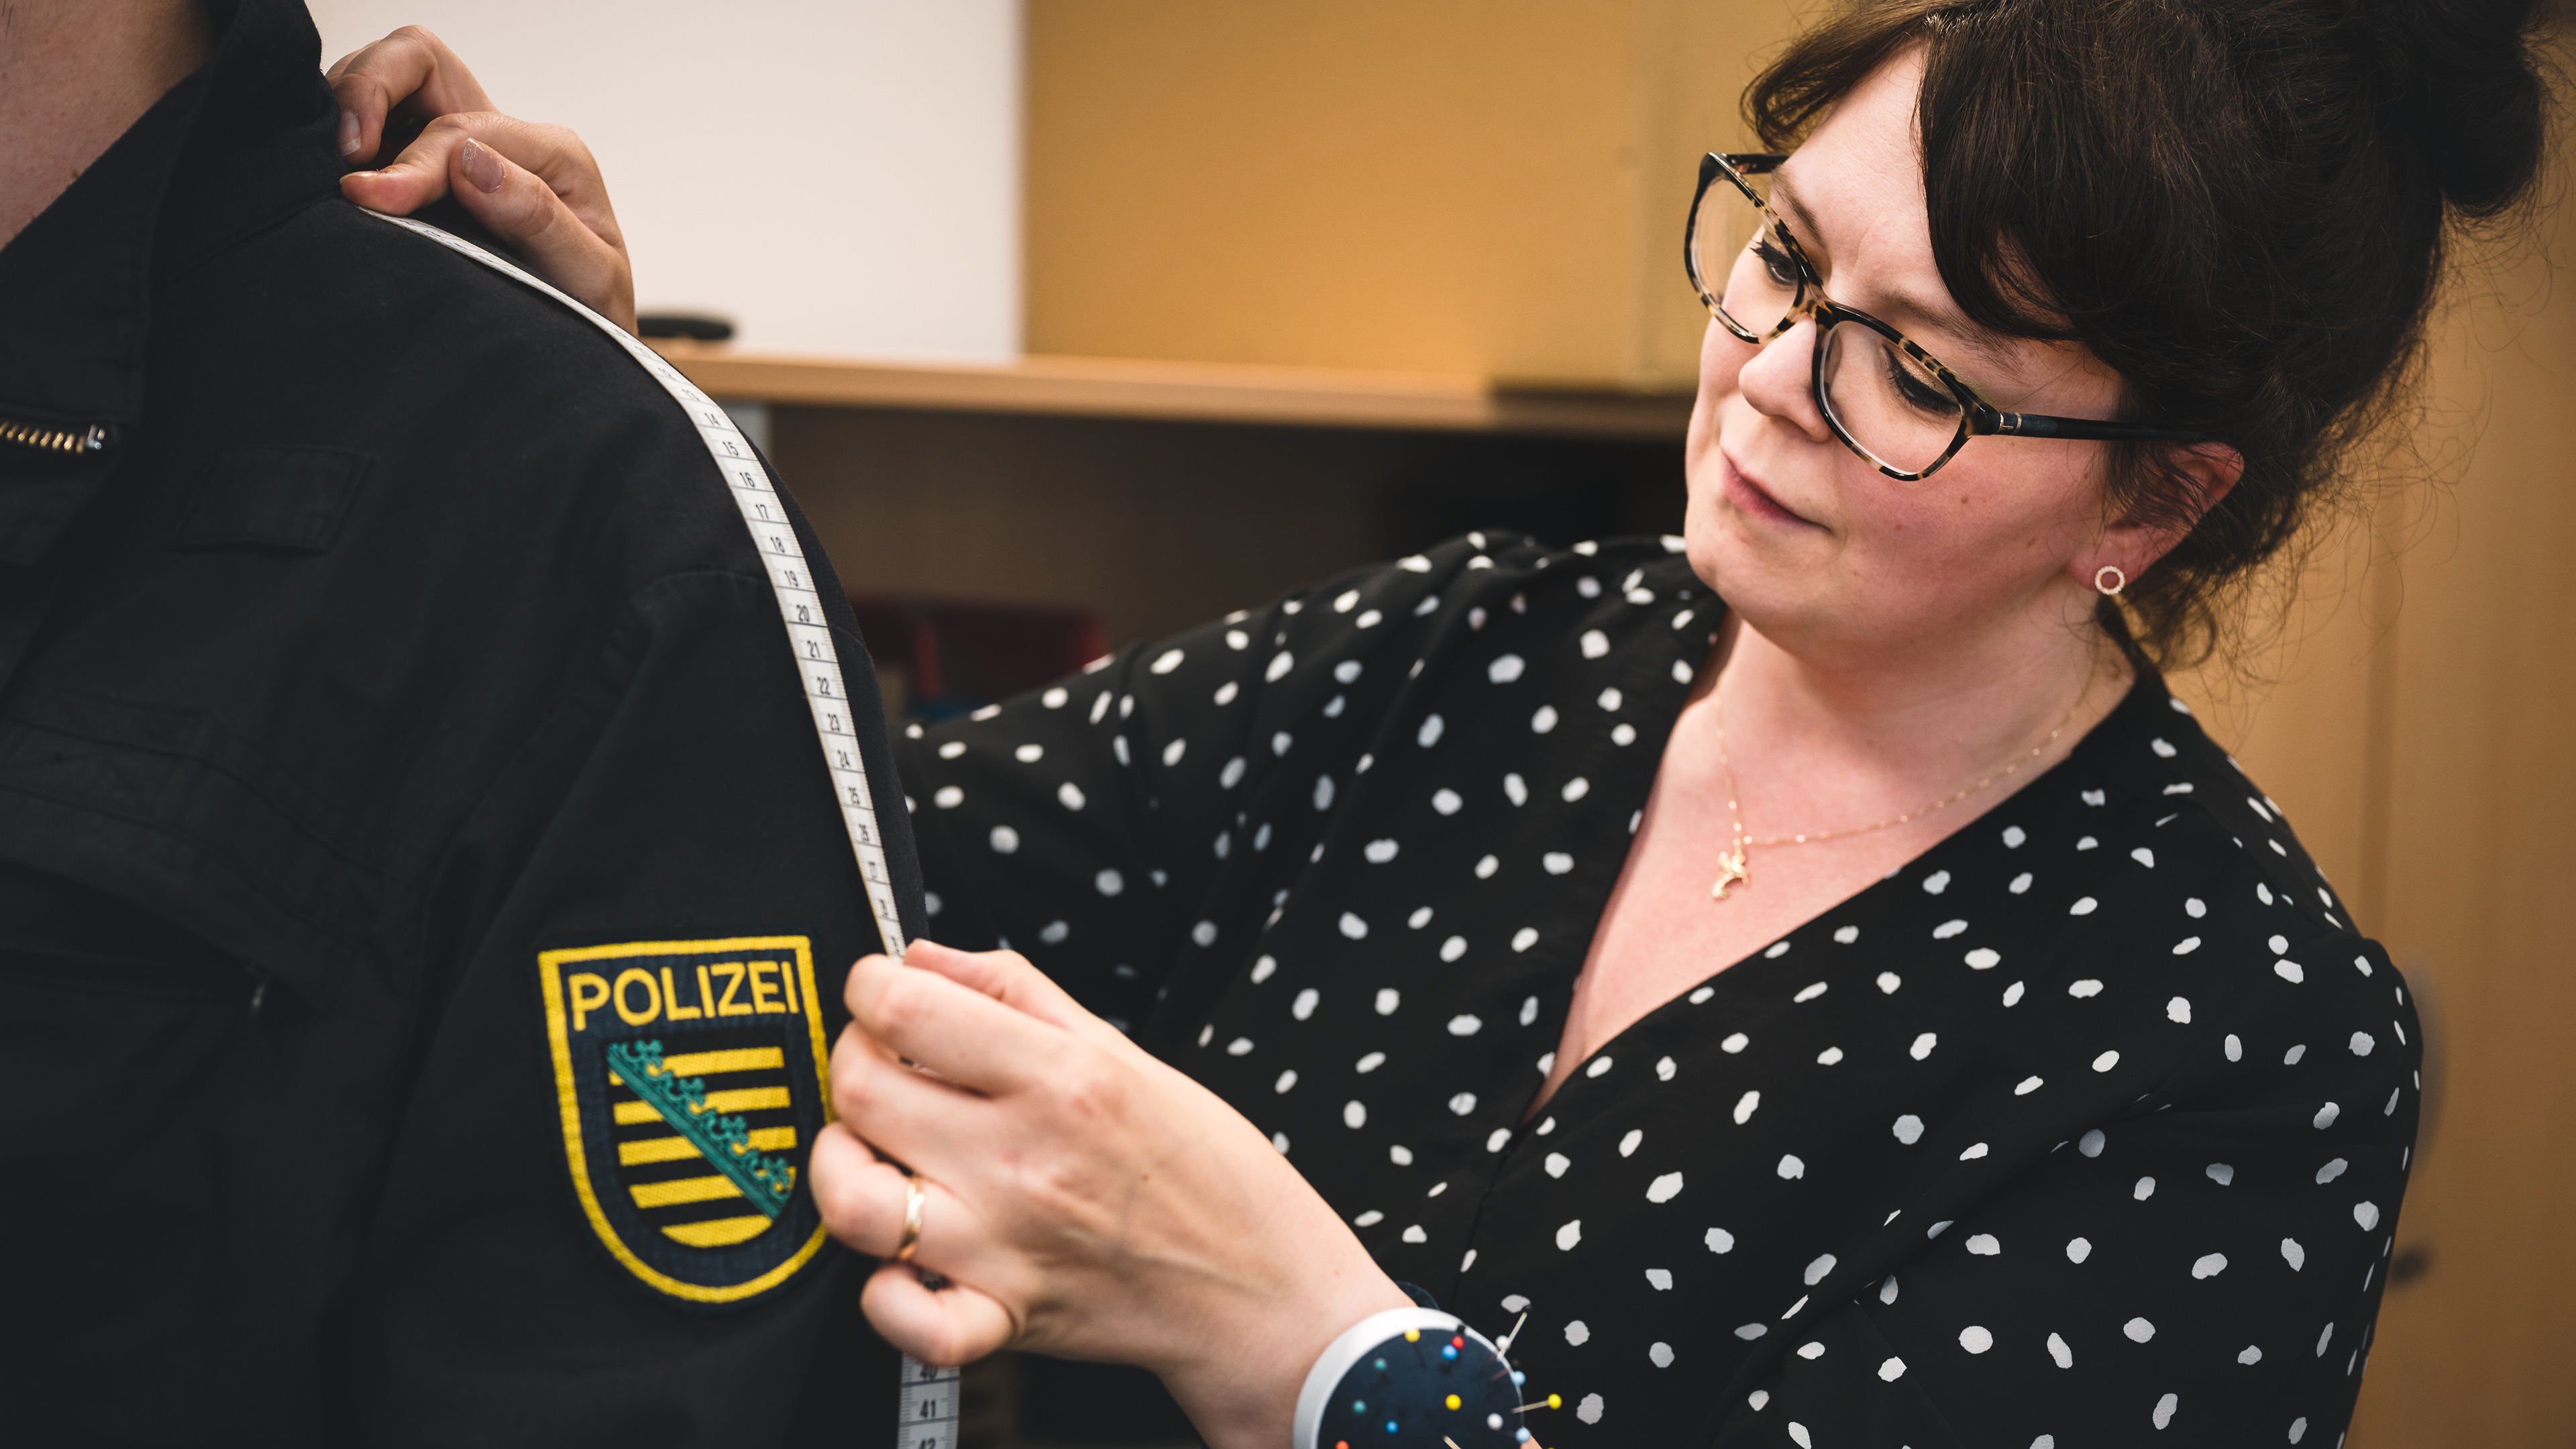 Eine Schneiderin des Polizeiverwaltungsamts bei ihrer Arbeit. Sie hält ein Maßband an eine Uniform.